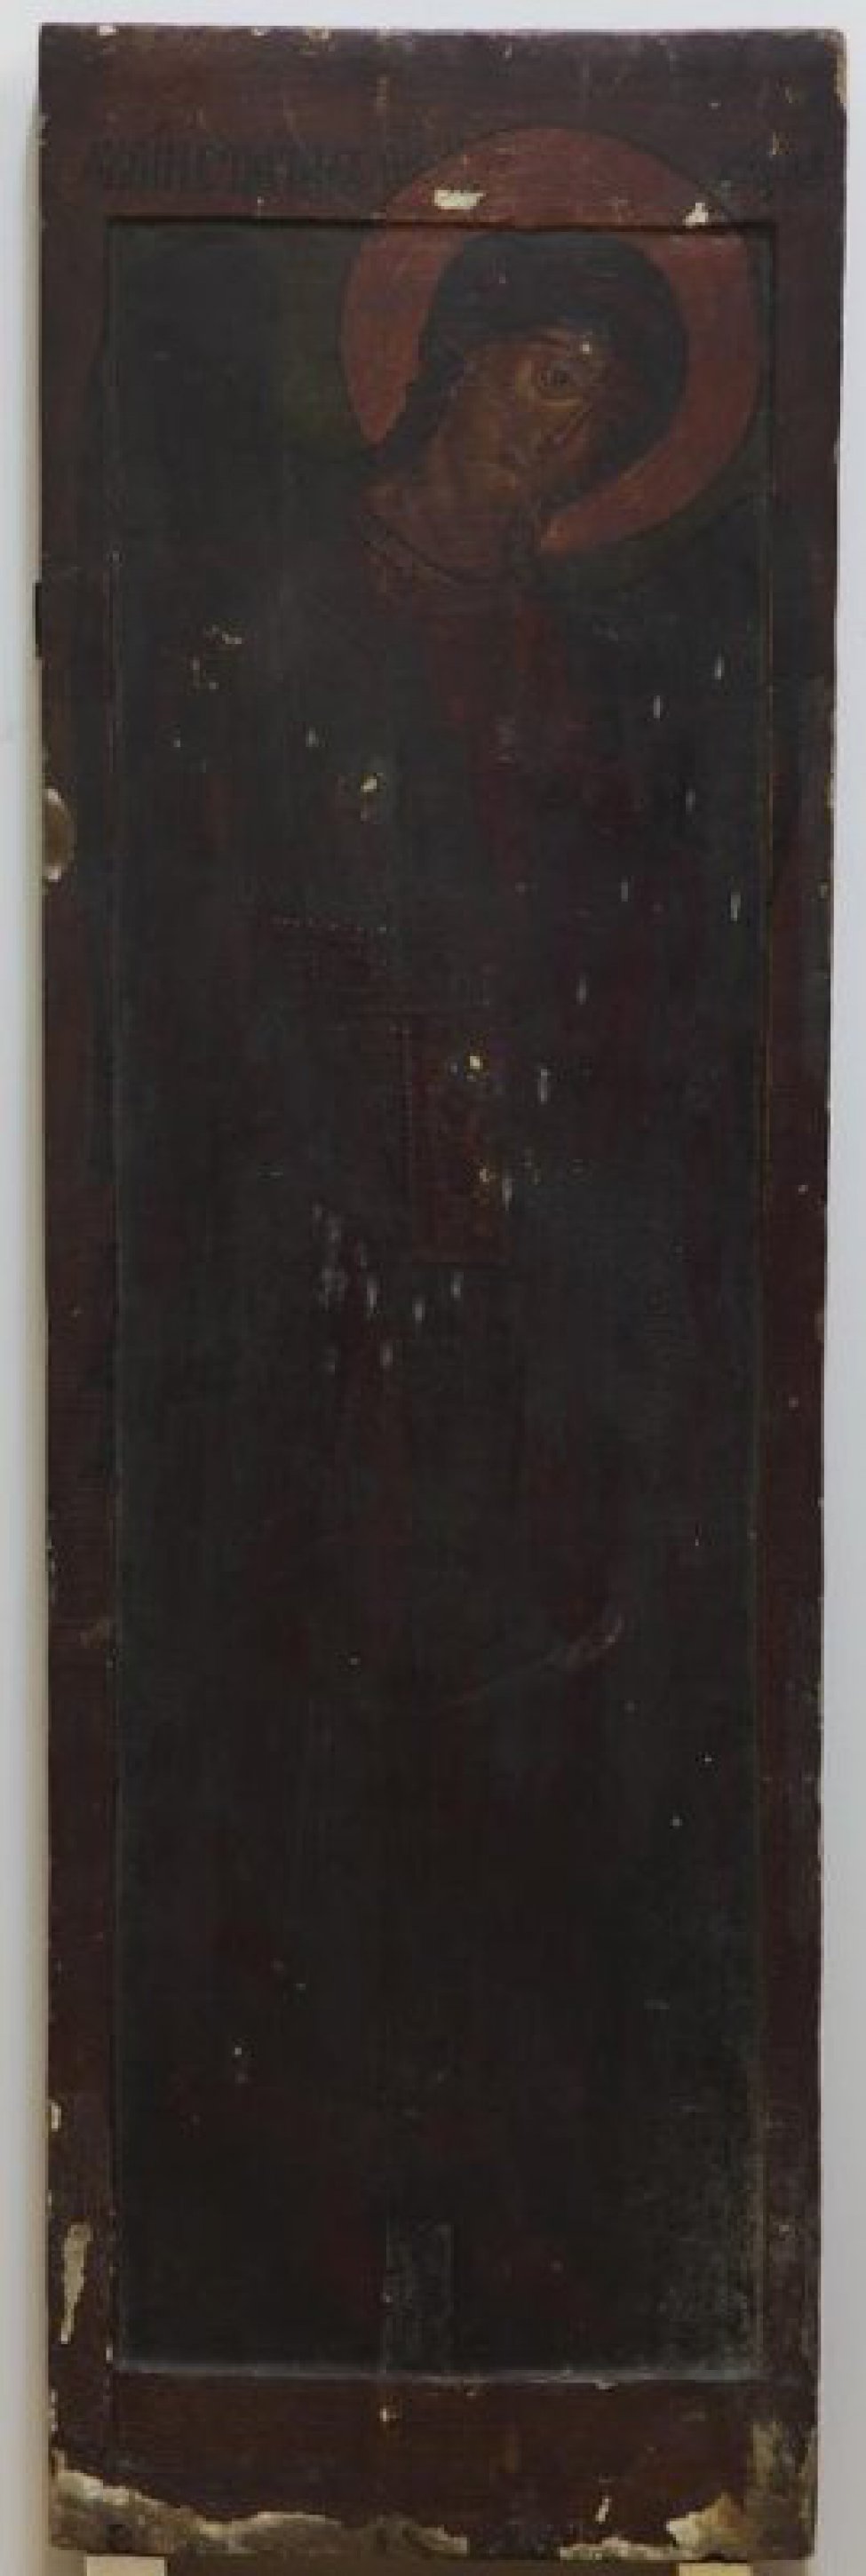 Доска: Доска с двумя врезными шпонками.
Изображен Архистратиг Михаил в рост, в красной одежде, в 3/4 развороте вправо ( от зрителя). Фон зеленовато-коричневый.